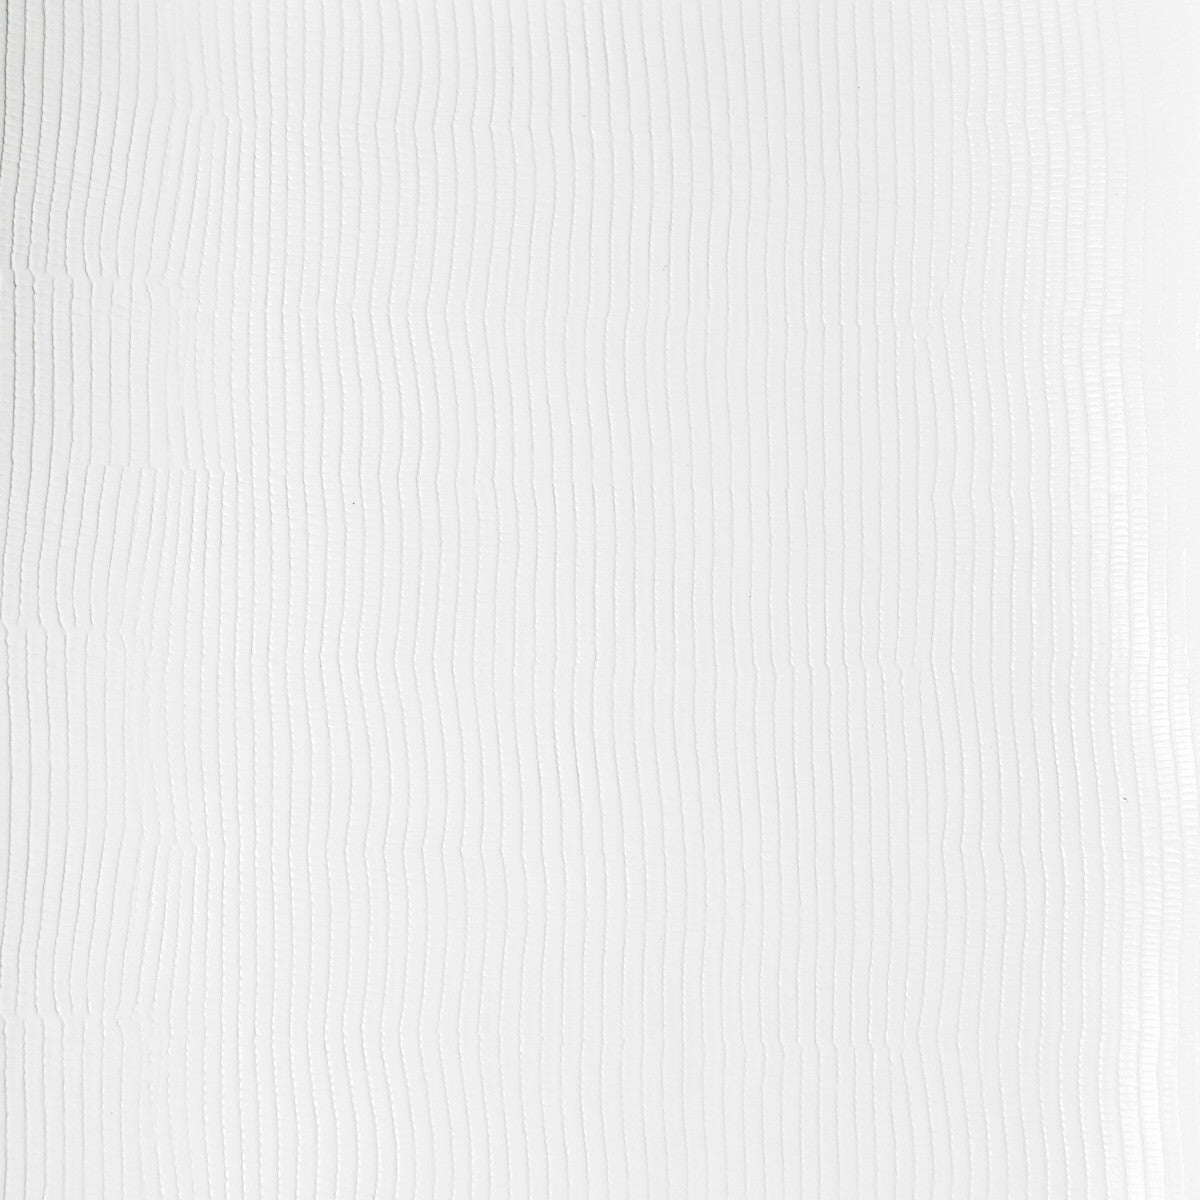 Kravet Design fabric in vela-1 color - pattern VELA.1.0 - by Kravet Design